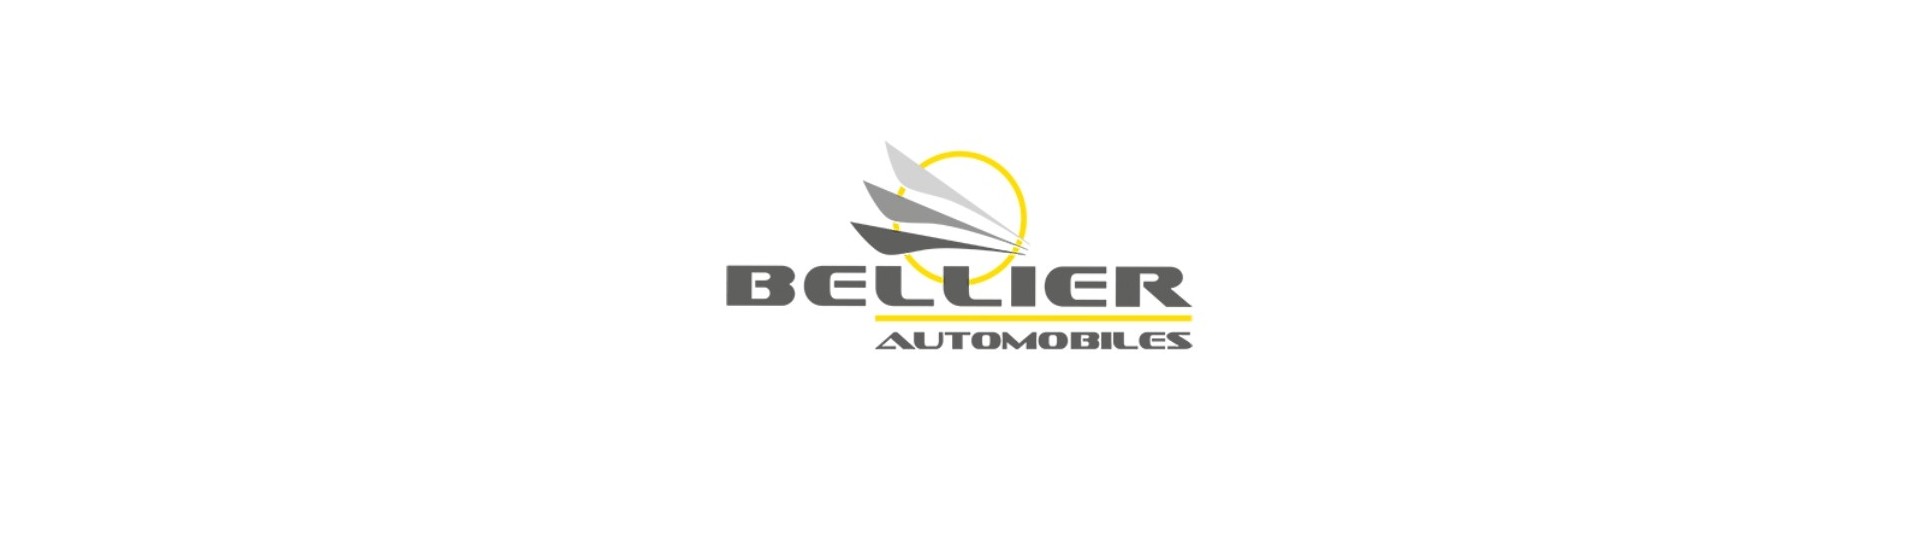 Generatorrem till bästa pris för en bil utan körkort Bellier